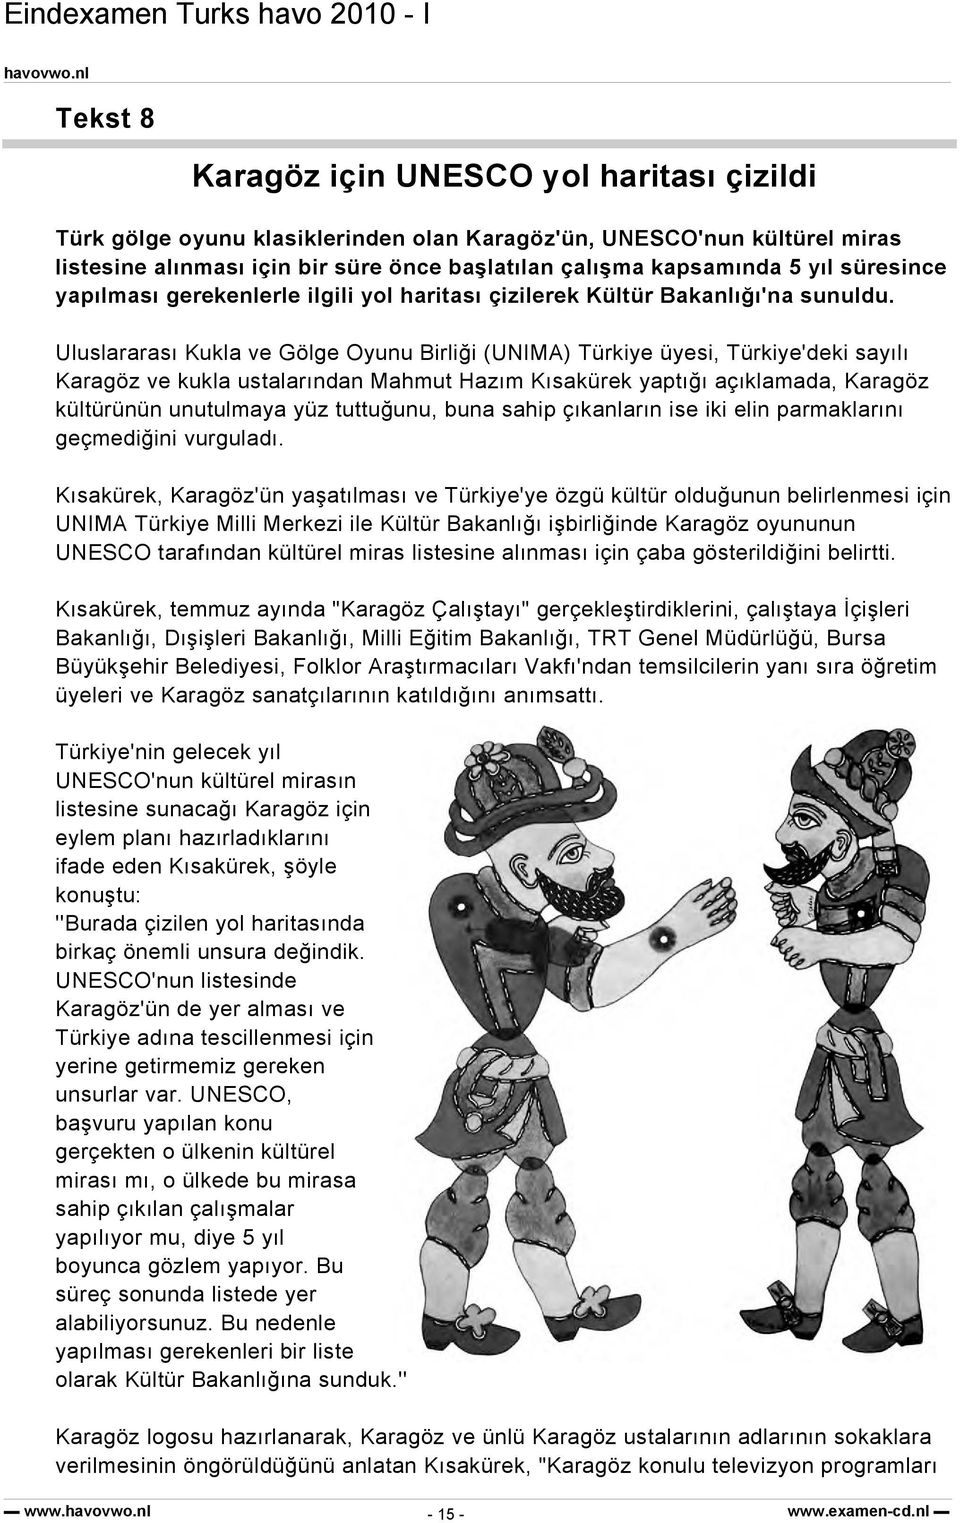 Uluslararası Kukla ve Gölge Oyunu Birliği (UNIMA) Türkiye üyesi, Türkiye'deki sayılı Karagöz ve kukla ustalarından Mahmut Hazım Kısakürek yaptığı açıklamada, Karagöz kültürünün unutulmaya yüz